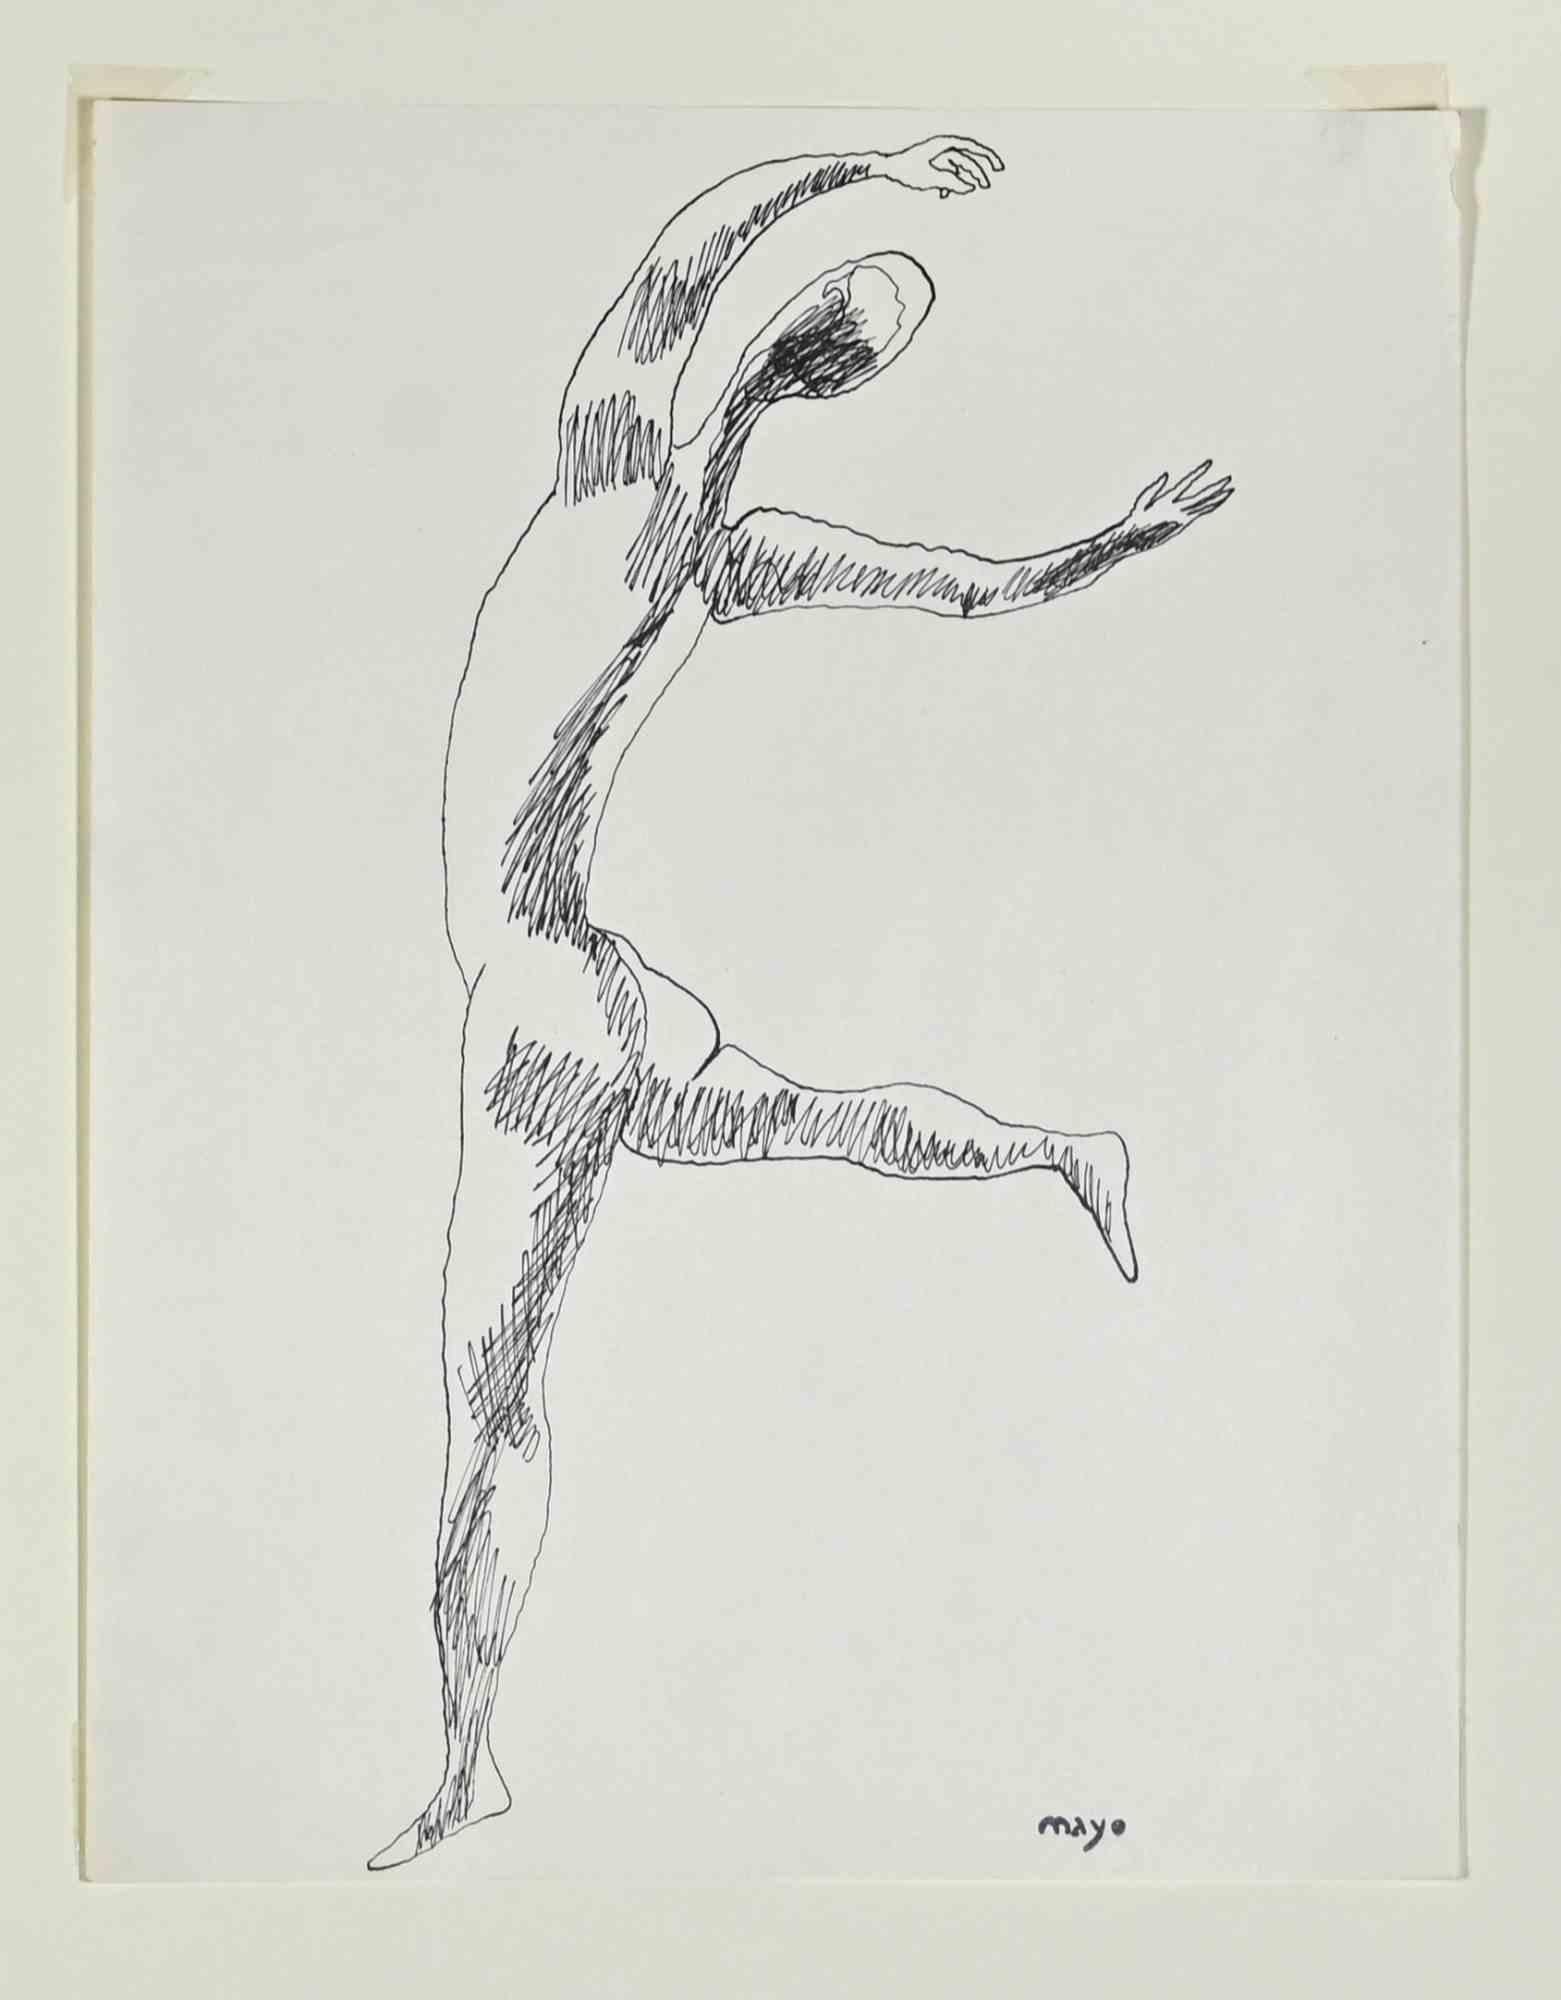 dancing figures sketch